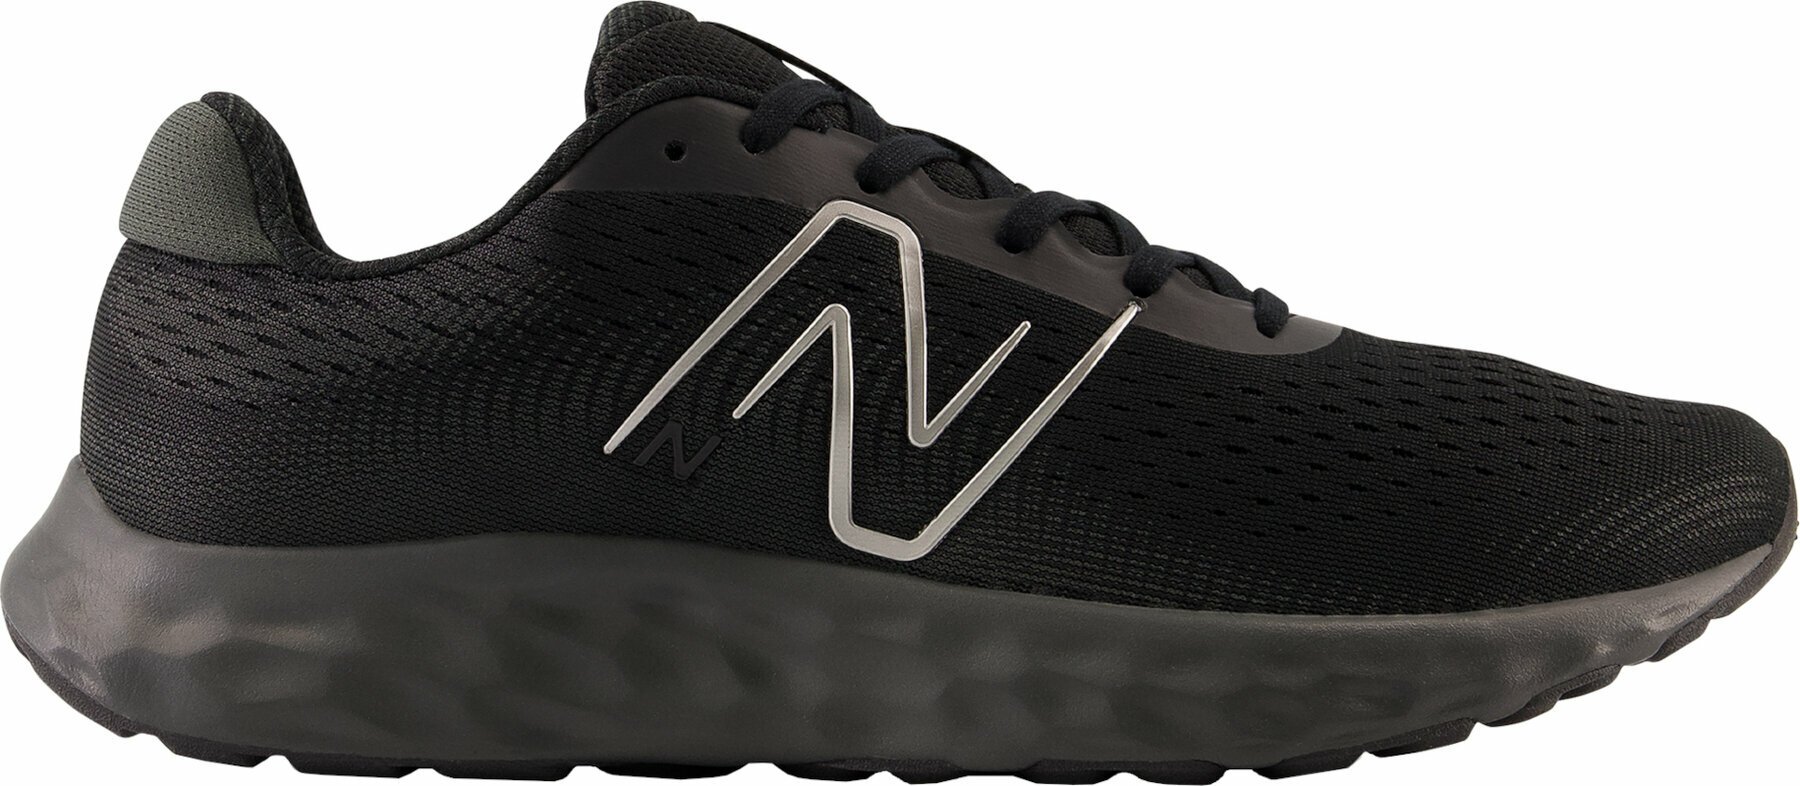 Παπούτσια Tρεξίματος Δρόμου New Balance Mens M520 Black 42,5 Παπούτσια Tρεξίματος Δρόμου